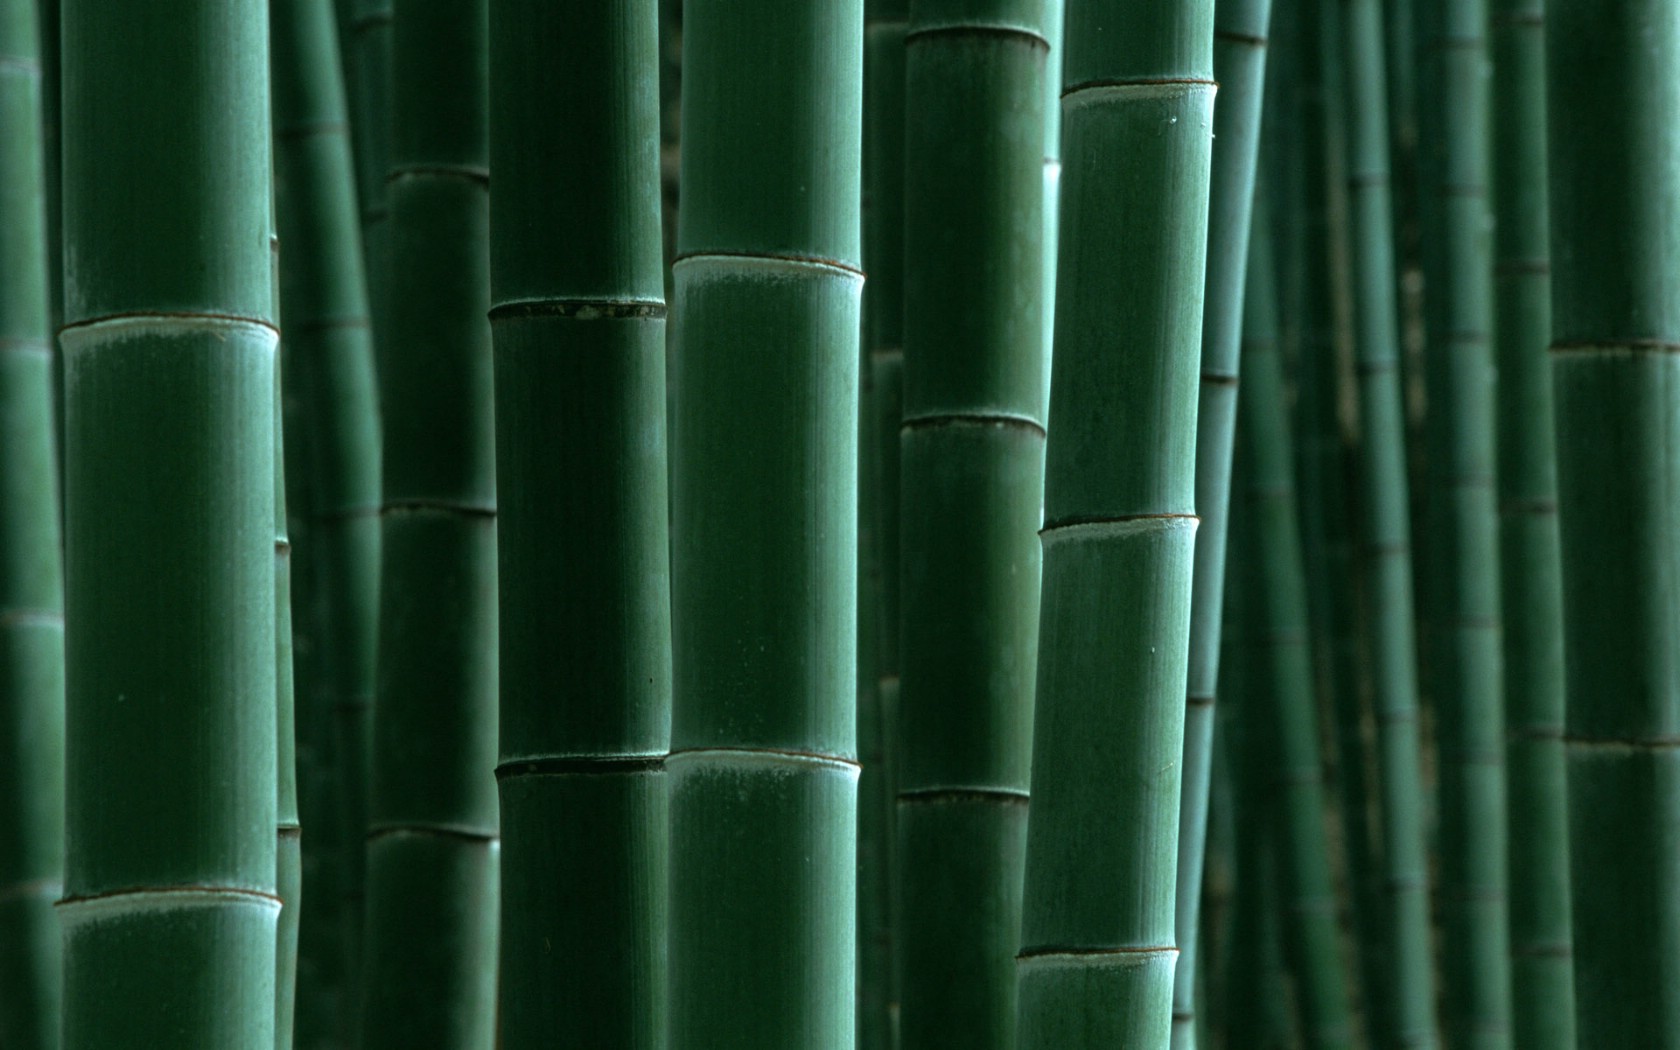 壁纸1680x1050绿色竹情壁纸壁纸 绿色竹情壁纸壁纸 绿色竹情壁纸图片 绿色竹情壁纸素材 植物壁纸 植物图库 植物图片素材桌面壁纸